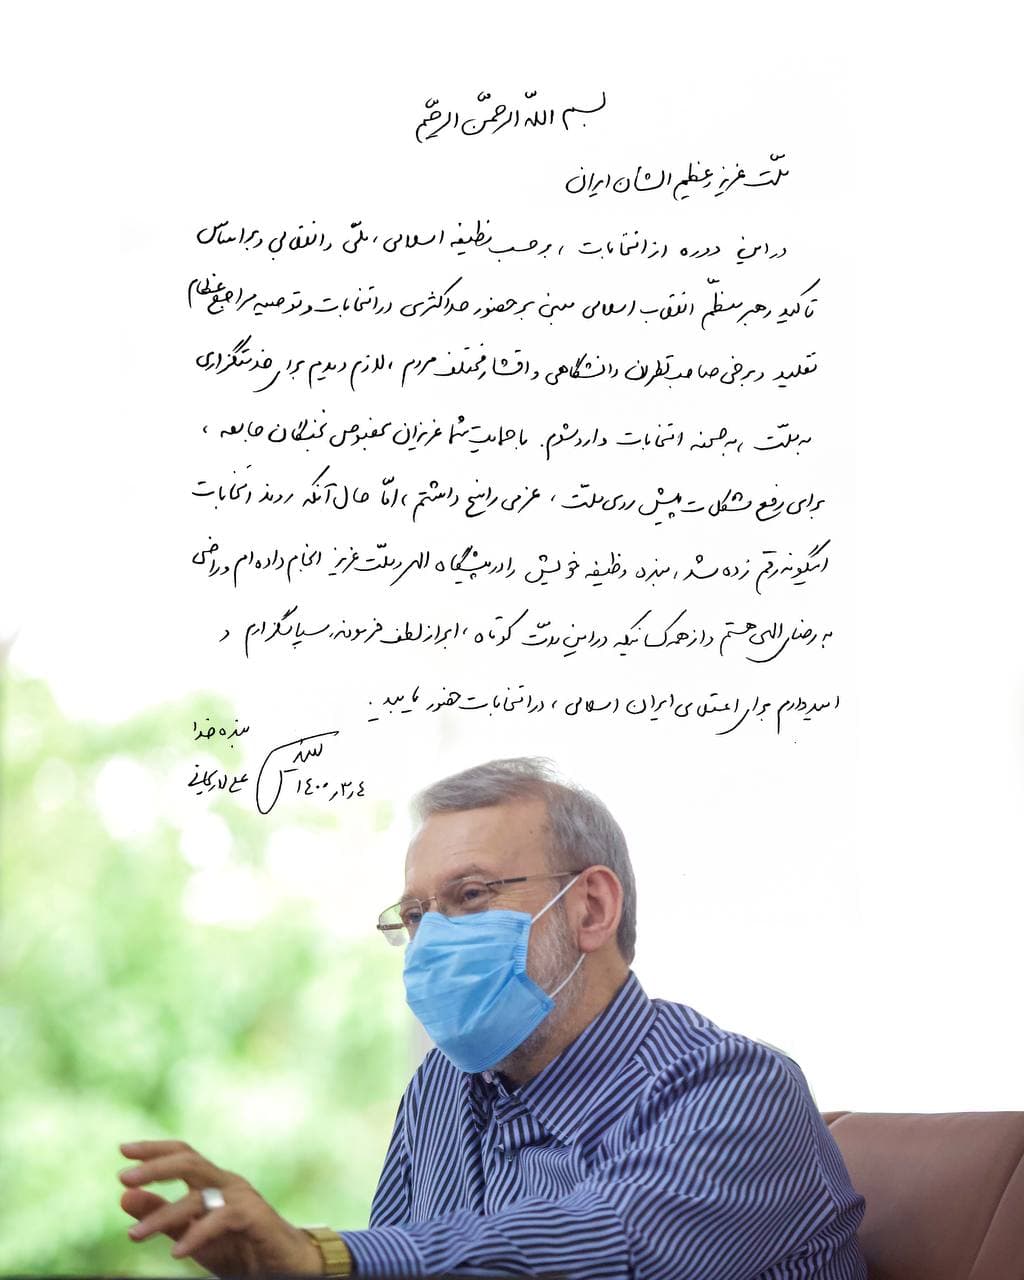 دلایل رد صلاحیت لاریجانی و نامه شورای نگهبان به علی لاریجانی به بحثی مهم در روزهای اخیر در فضای سیاسی کشور تبدیل شده سات